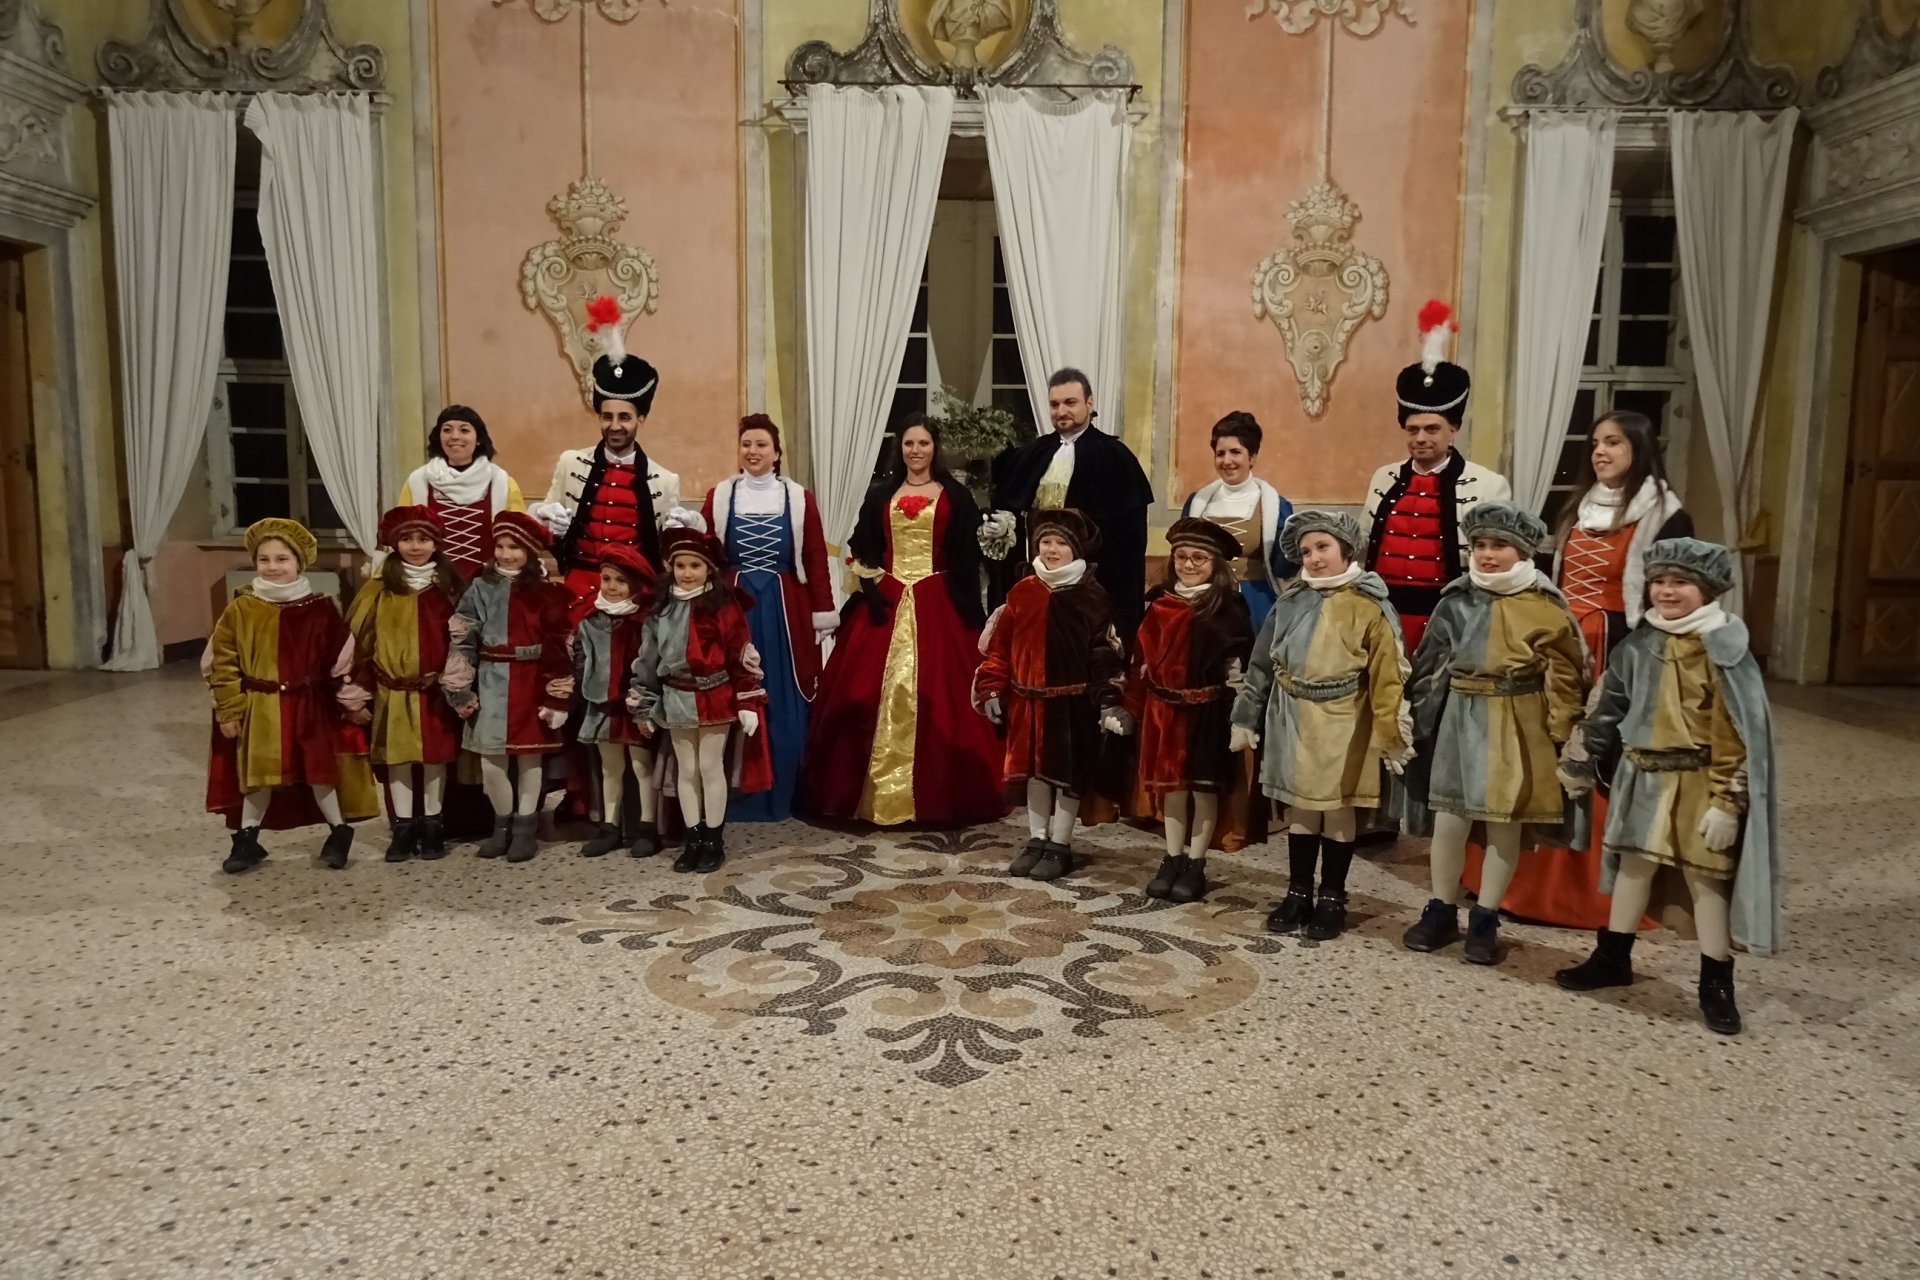 Carnevale S.Giorgio 2019, la corte